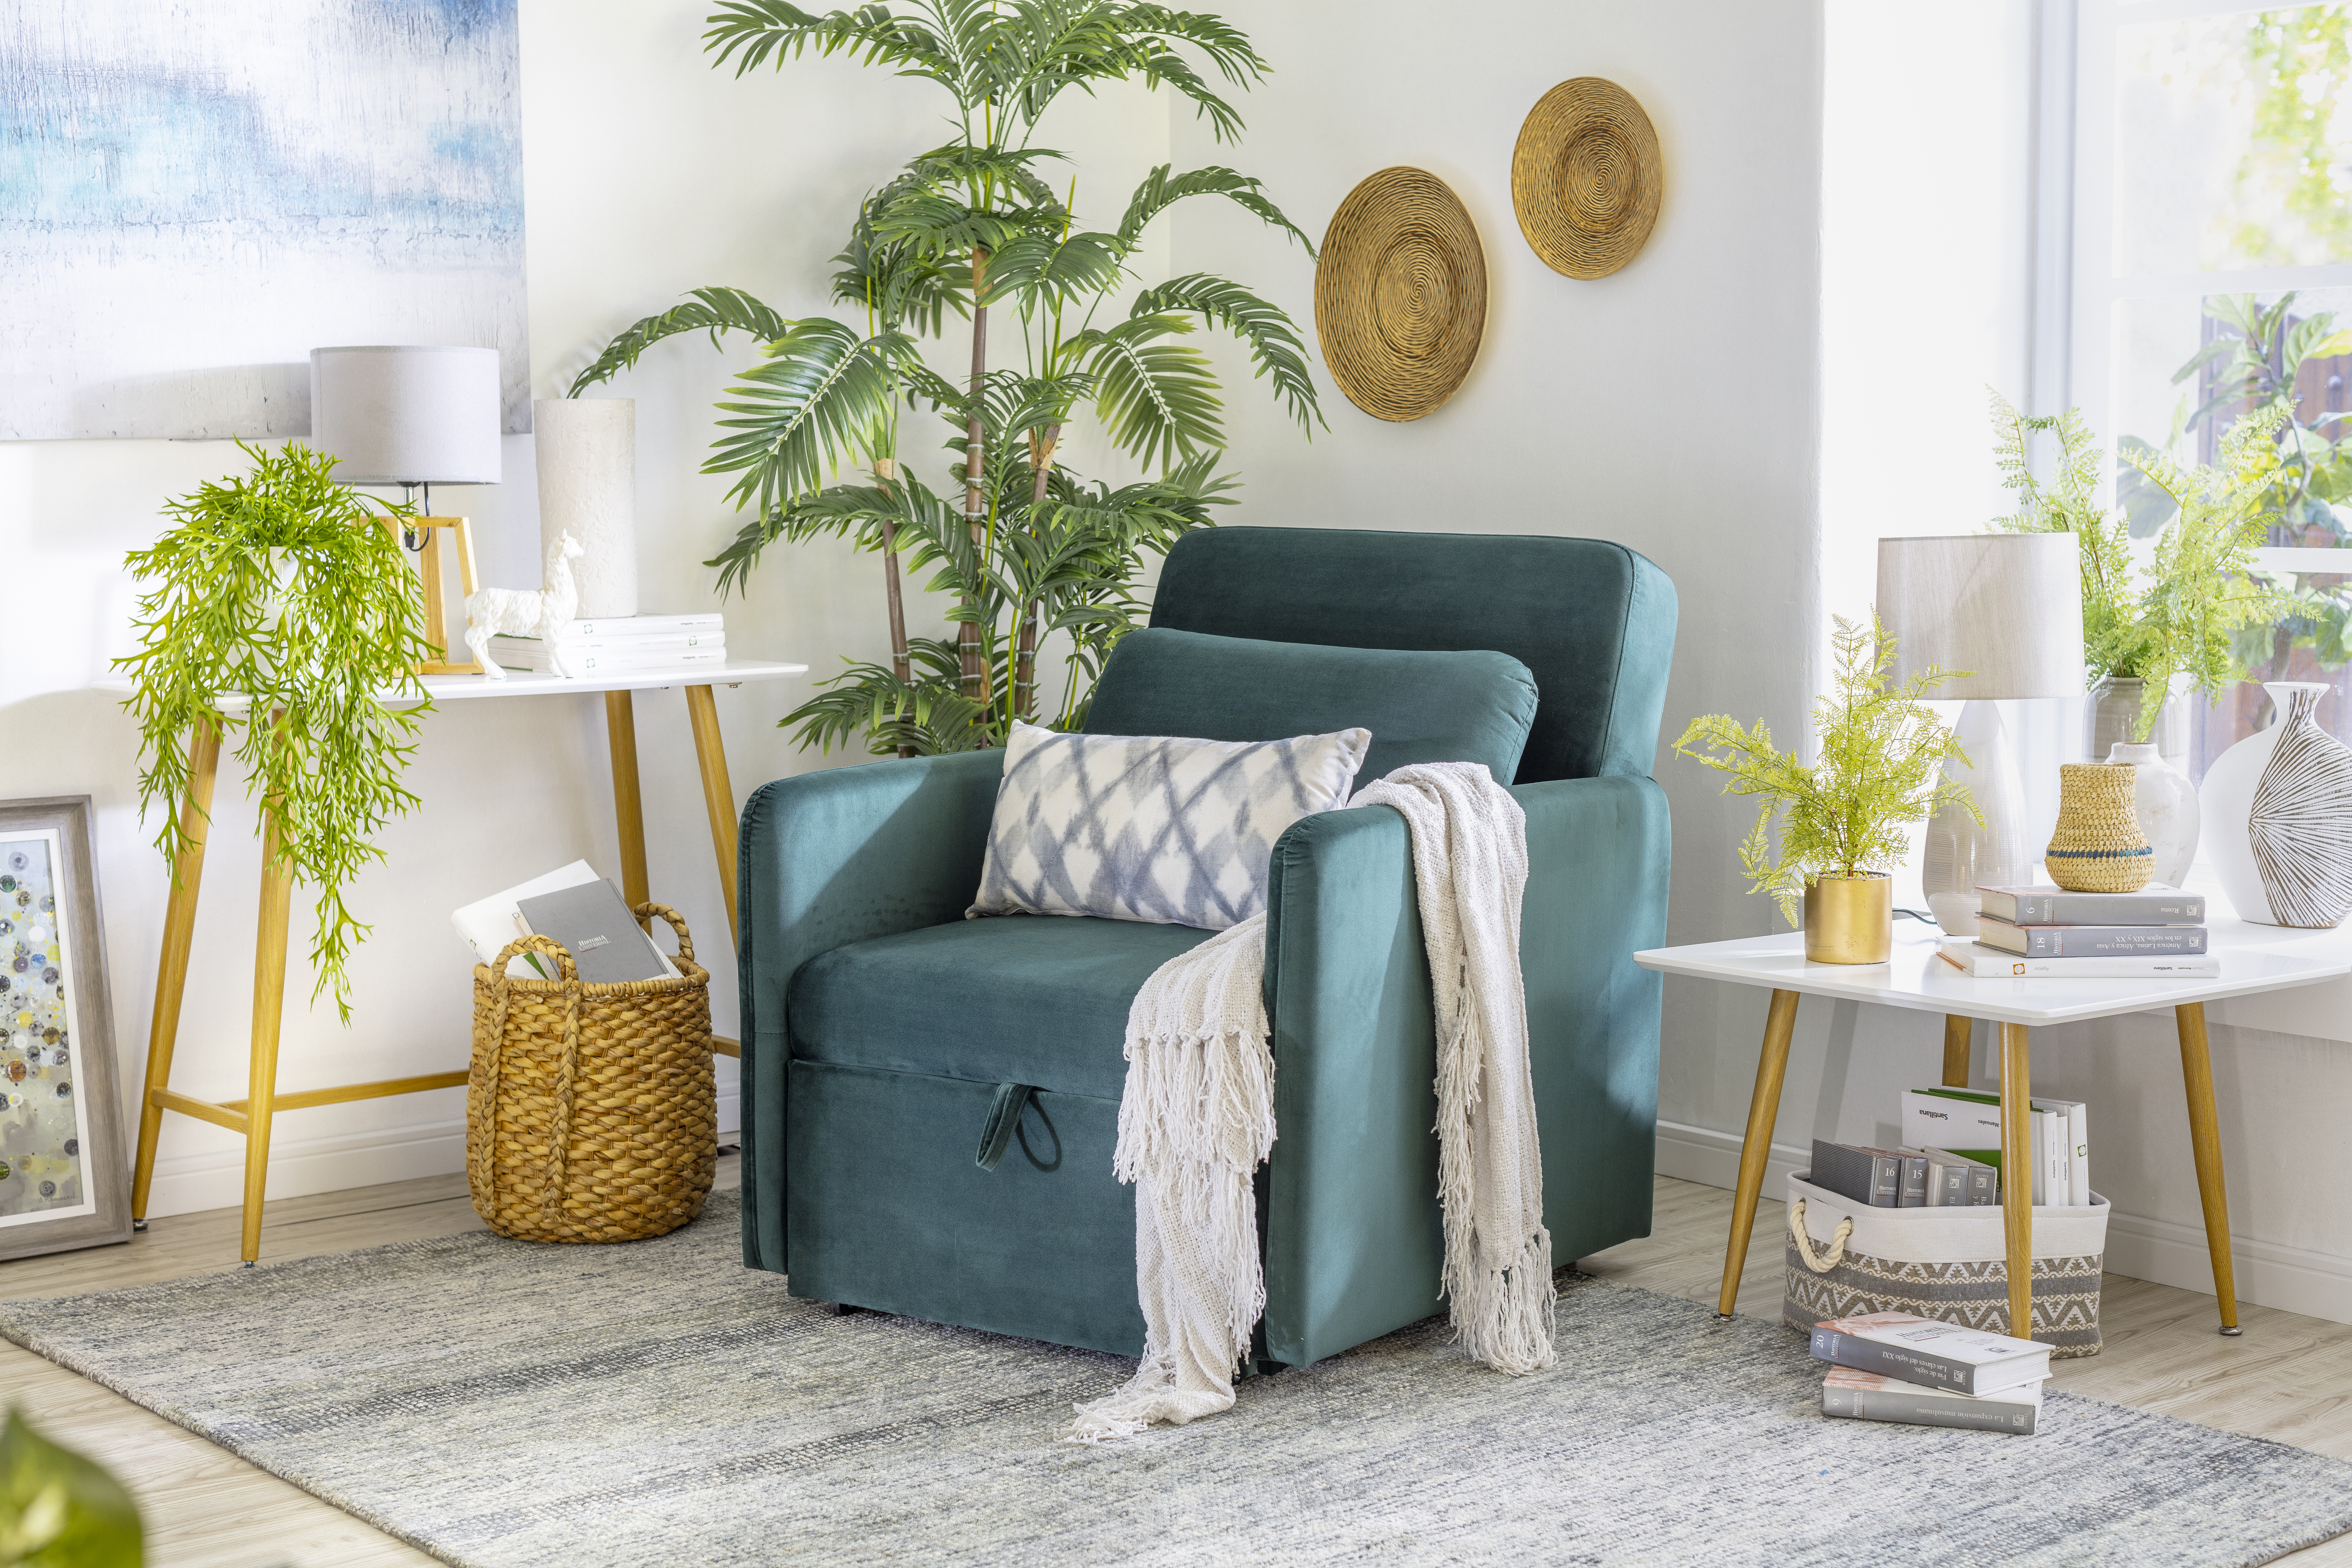 Espacio del hogar con un arrimo blanco con plantas y otras decoraciones, una poltrona velvet verde y una mesa lateral blanca.